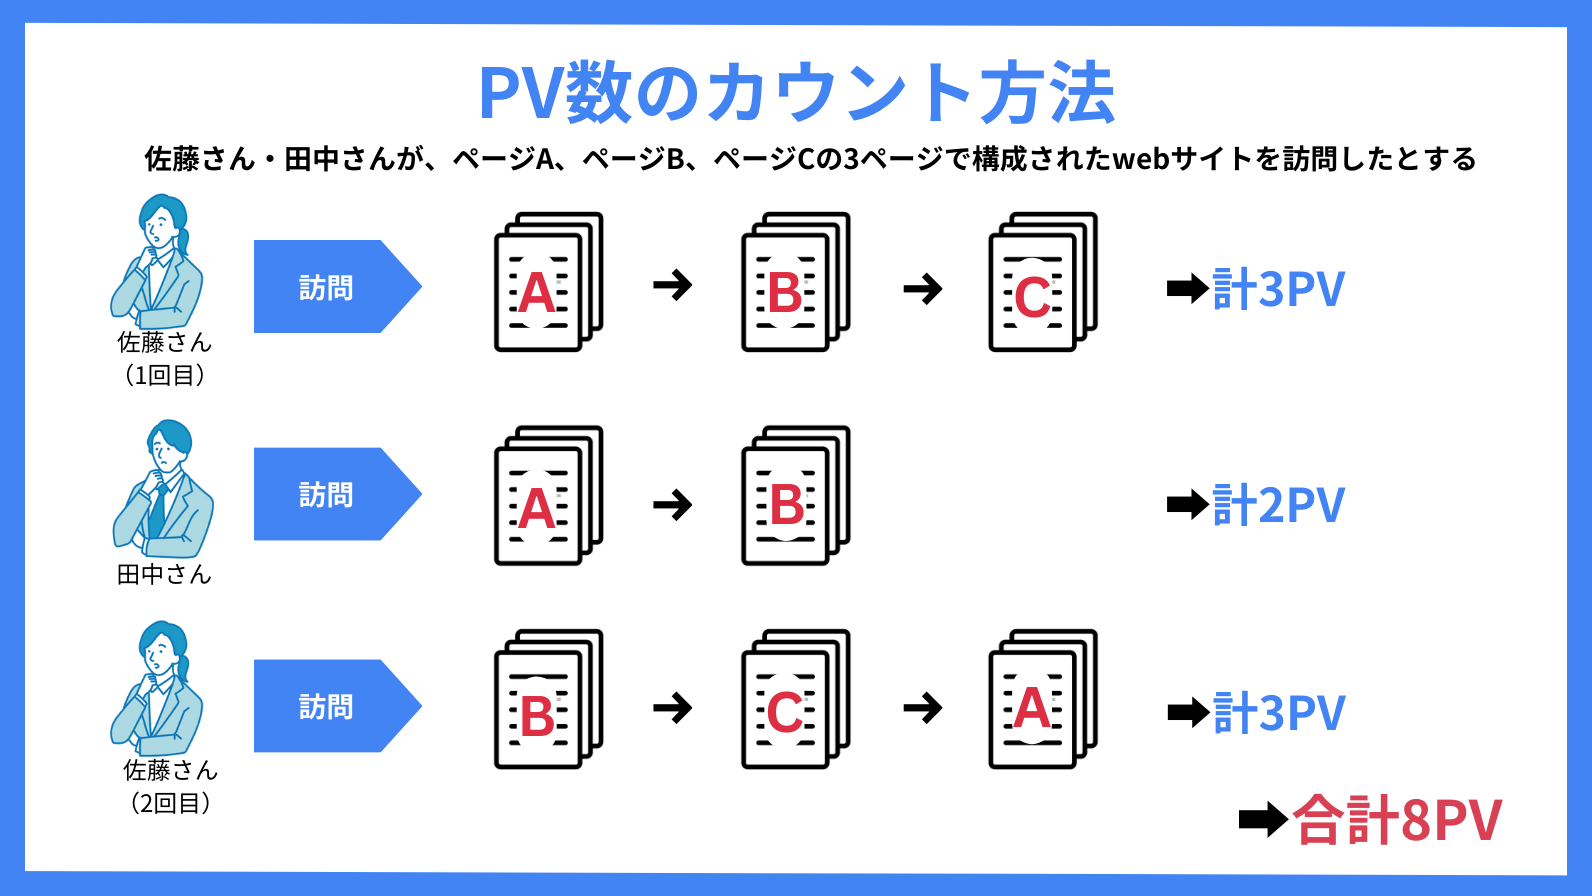 PV数のカウント方法をわかりやすく解説